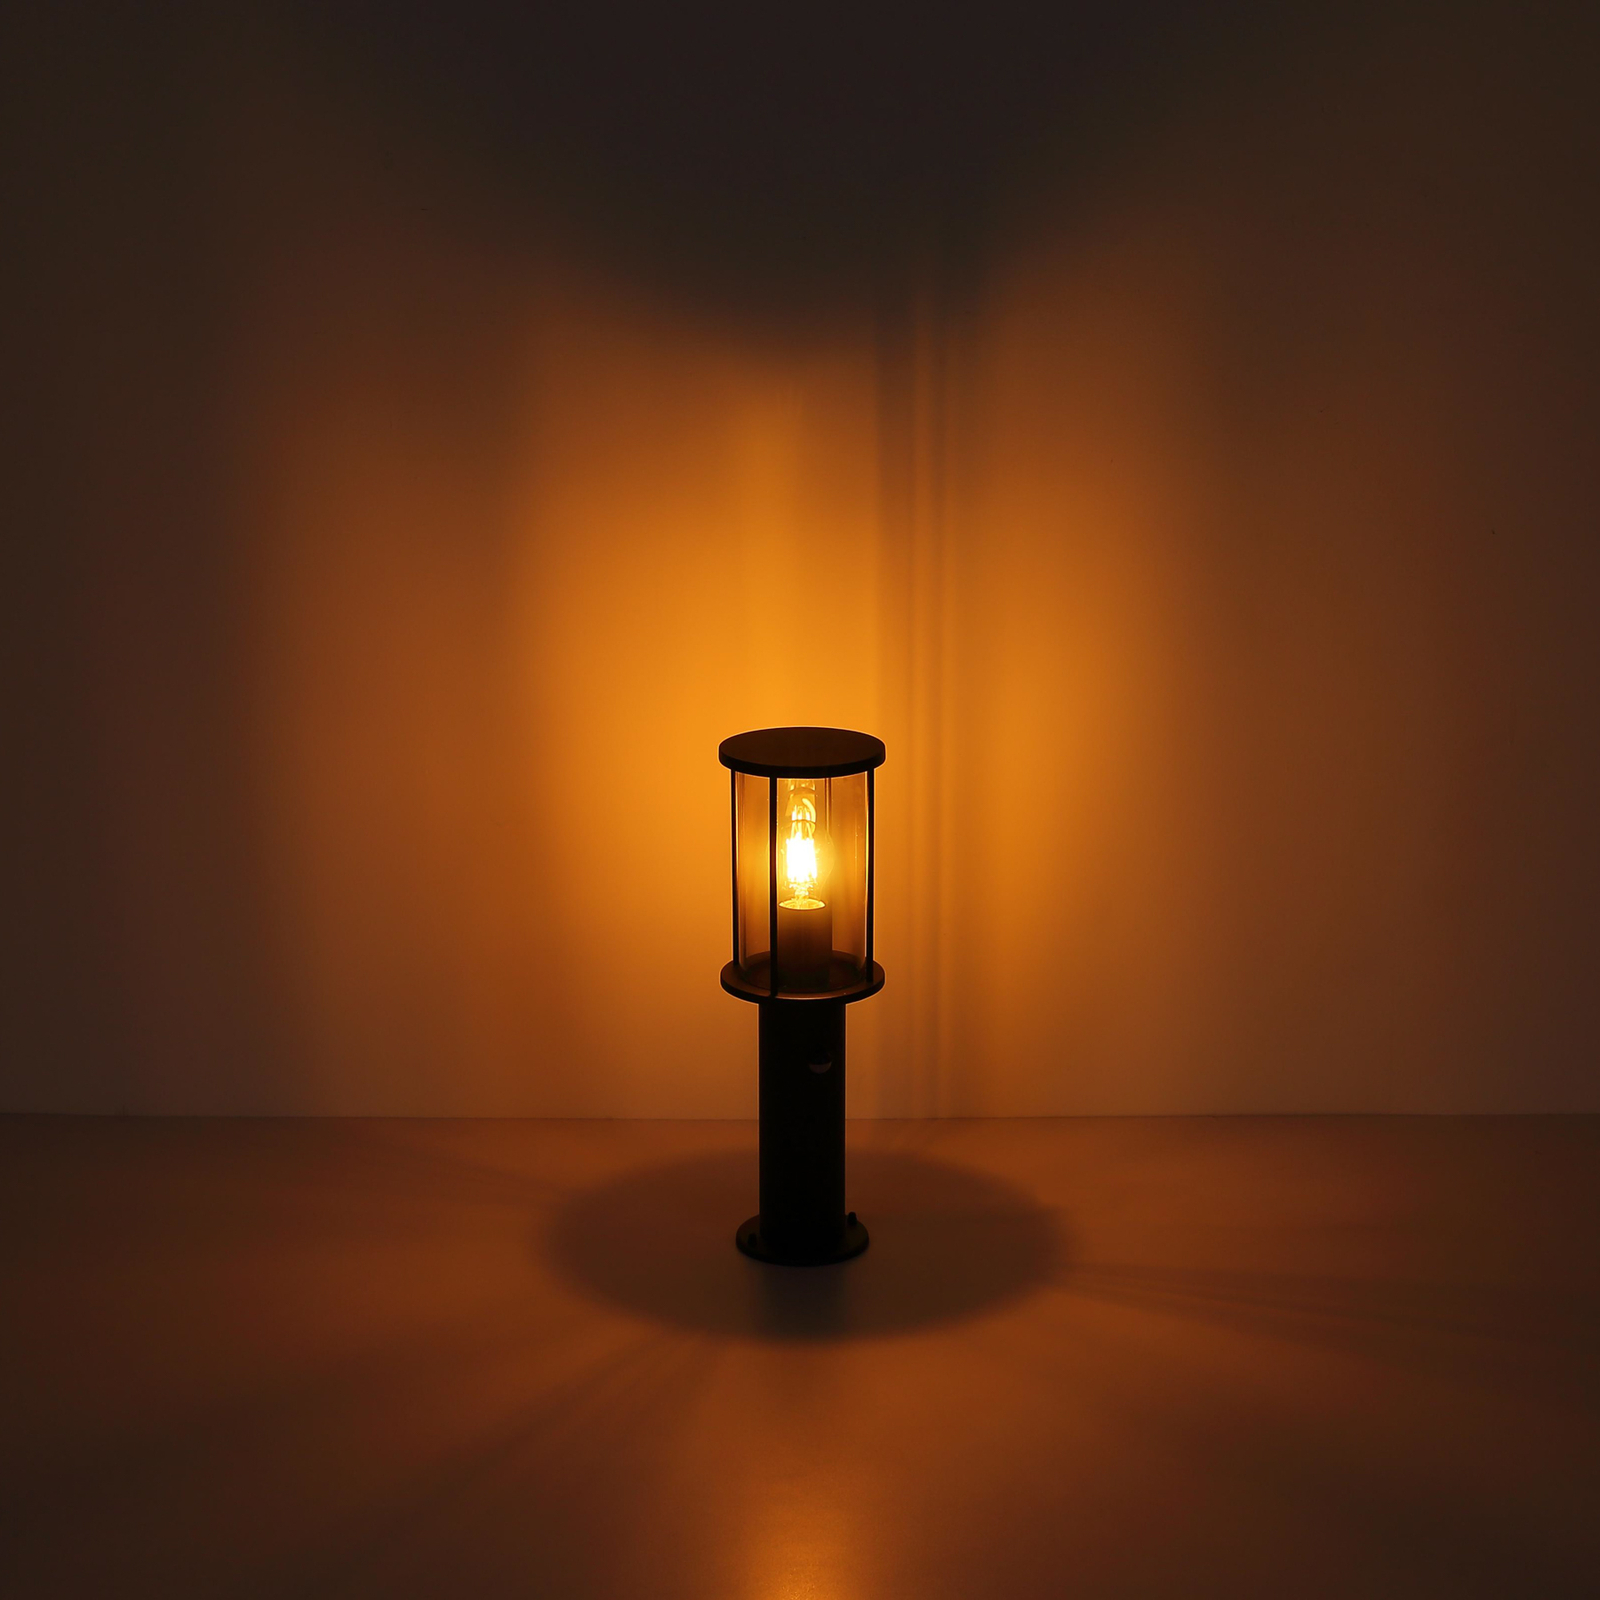 Luminaire pour socle Gracey, hauteur 45 cm, noir, inox, IP54